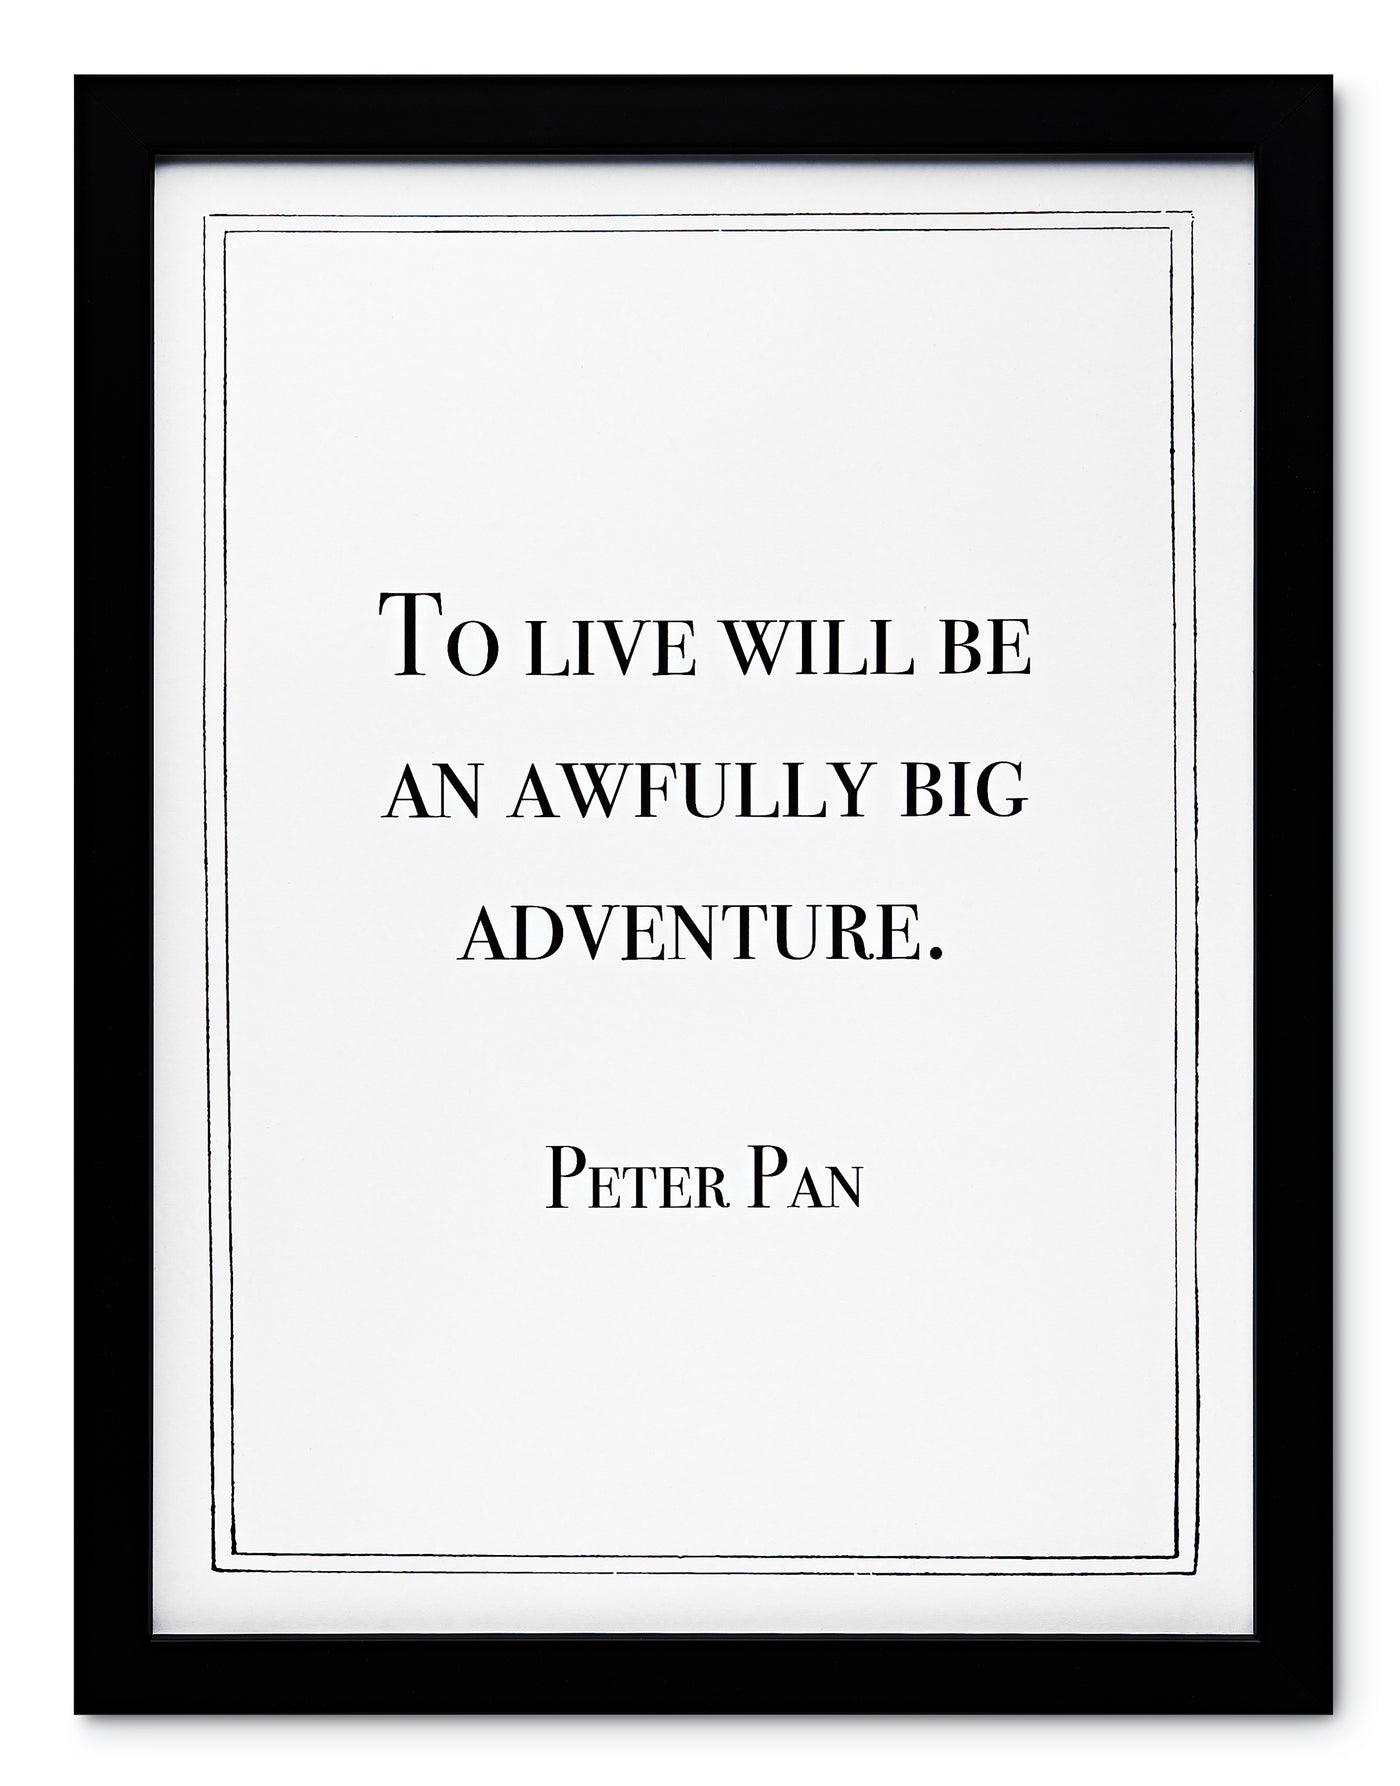 Art with Words: Peter Pan's Wisdom